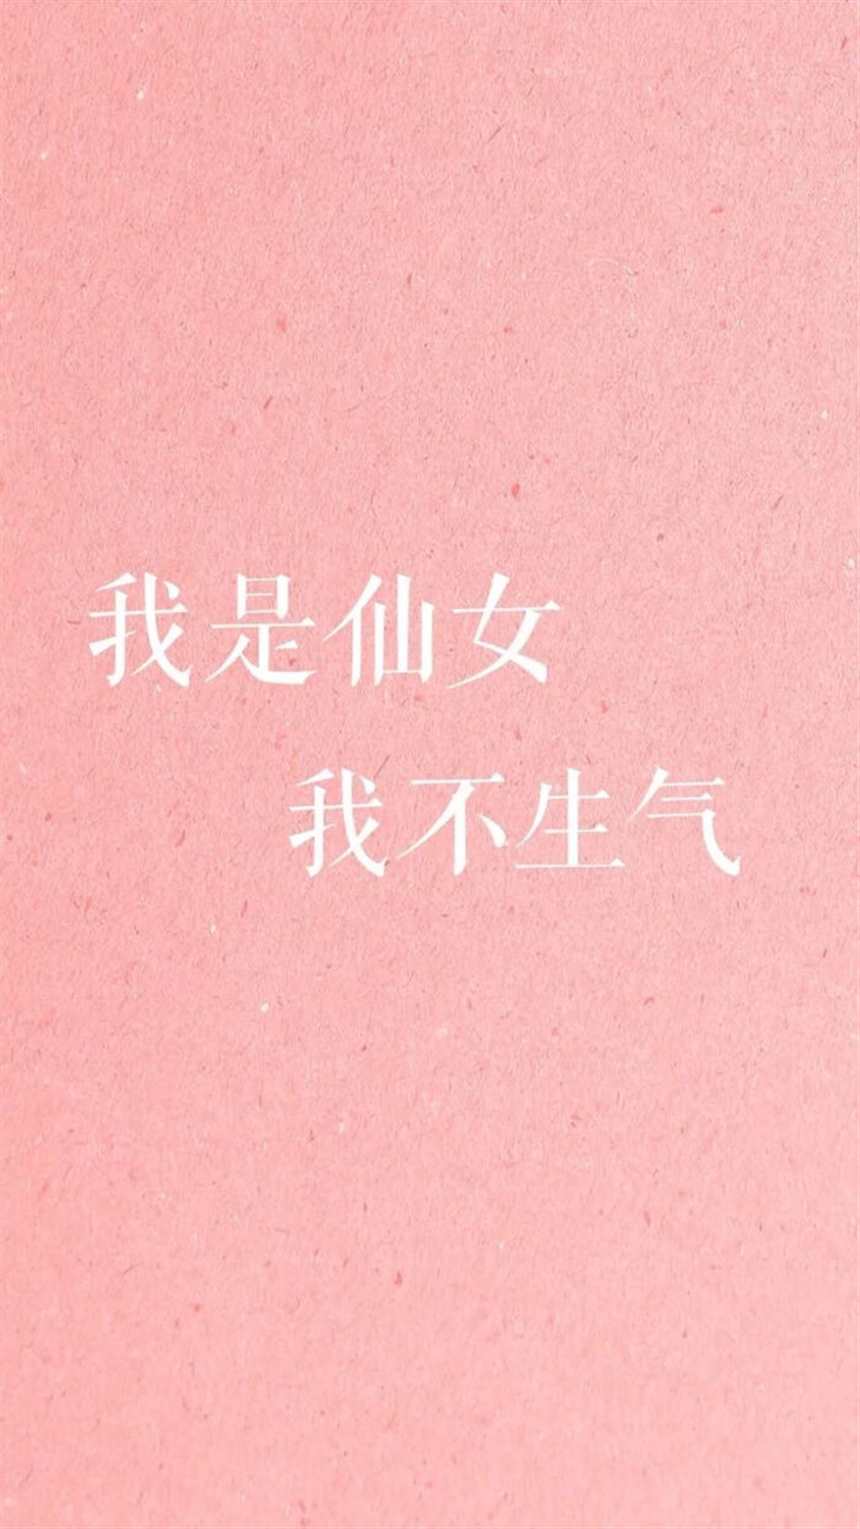 小仙女要温柔文字壁纸#粉色#带字